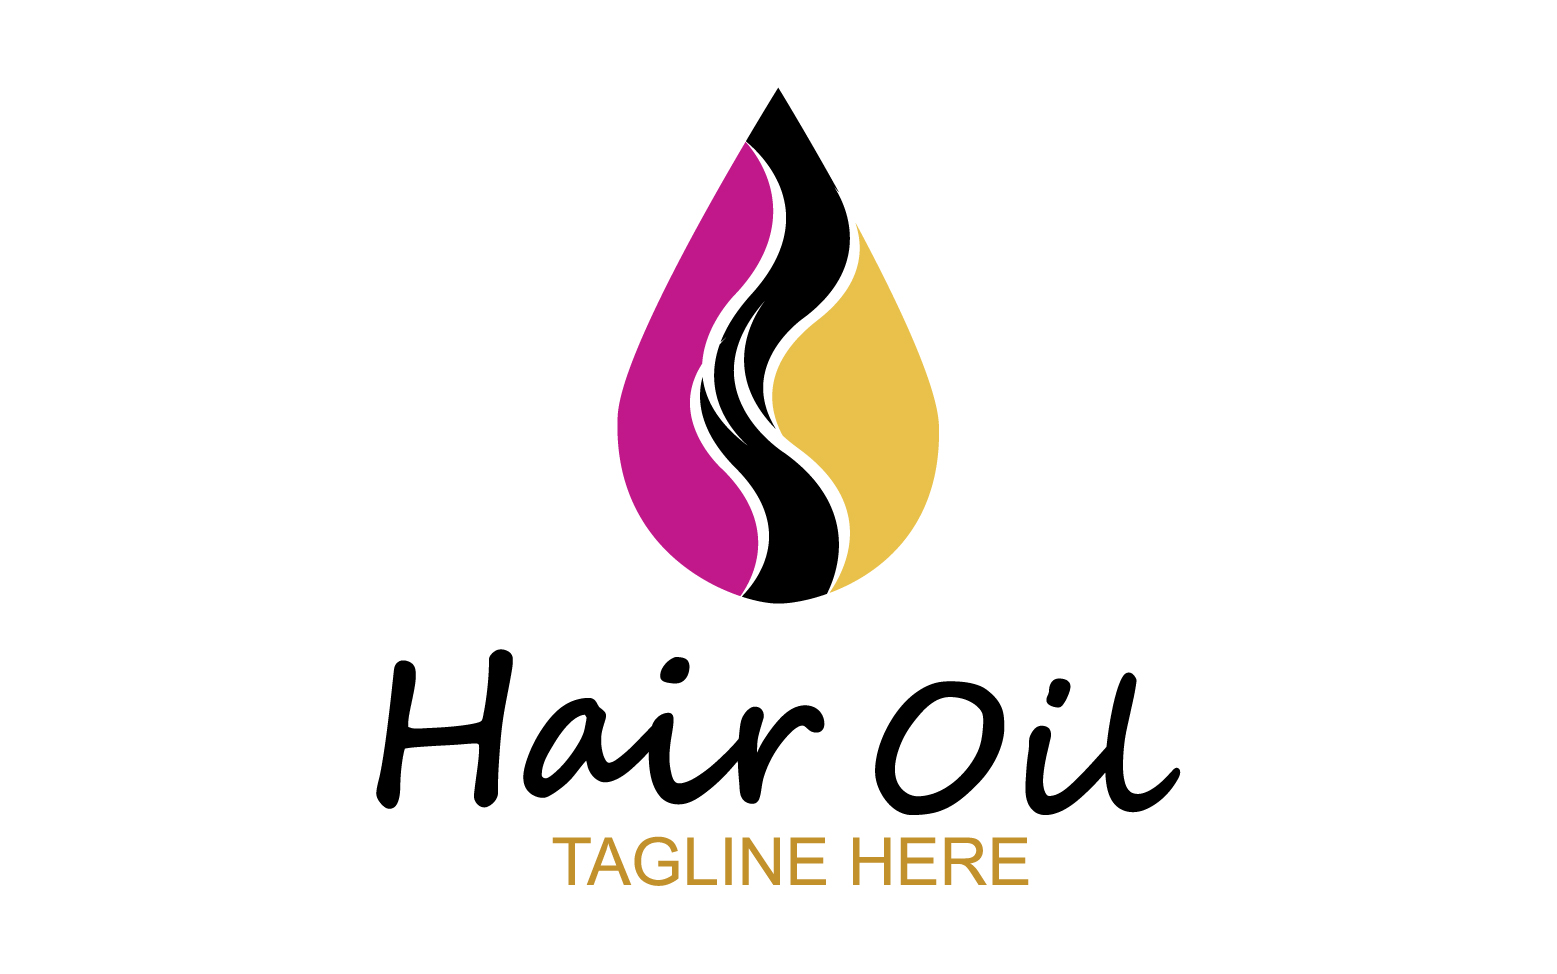 Hair oil health logo vector template v53